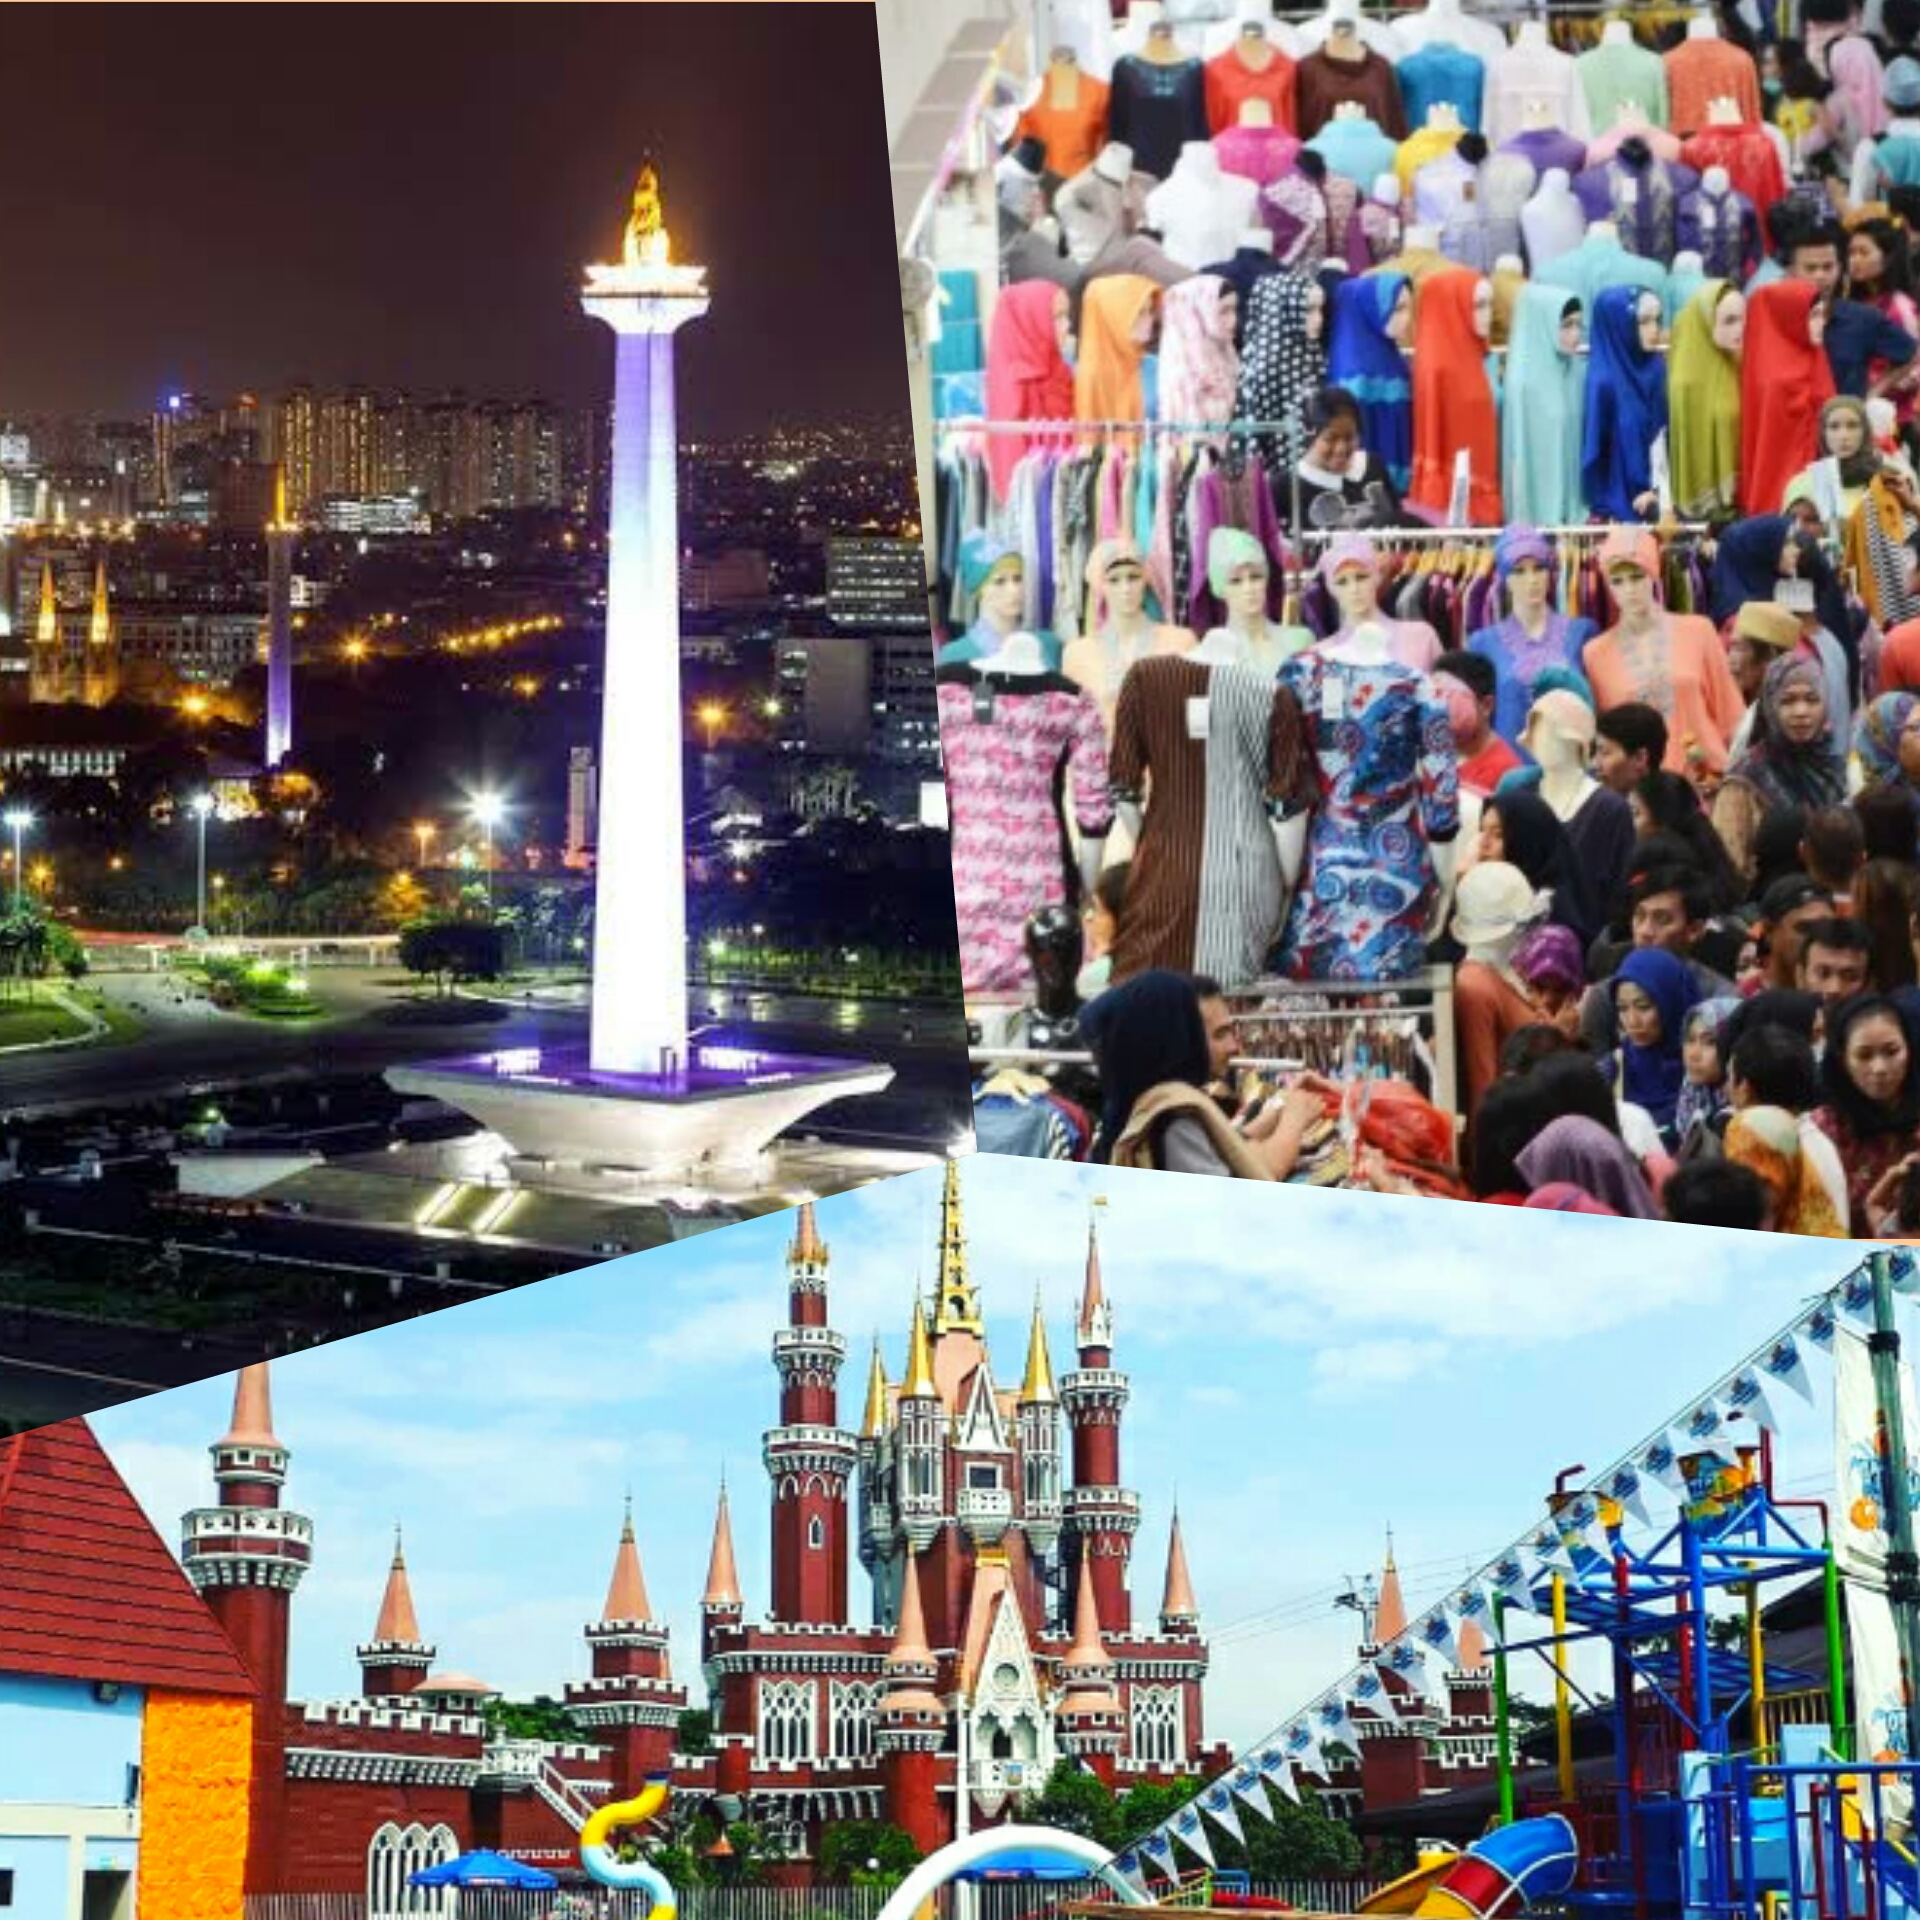 Objek Wisata Di Jakarta Pusat Dan Alamatnya